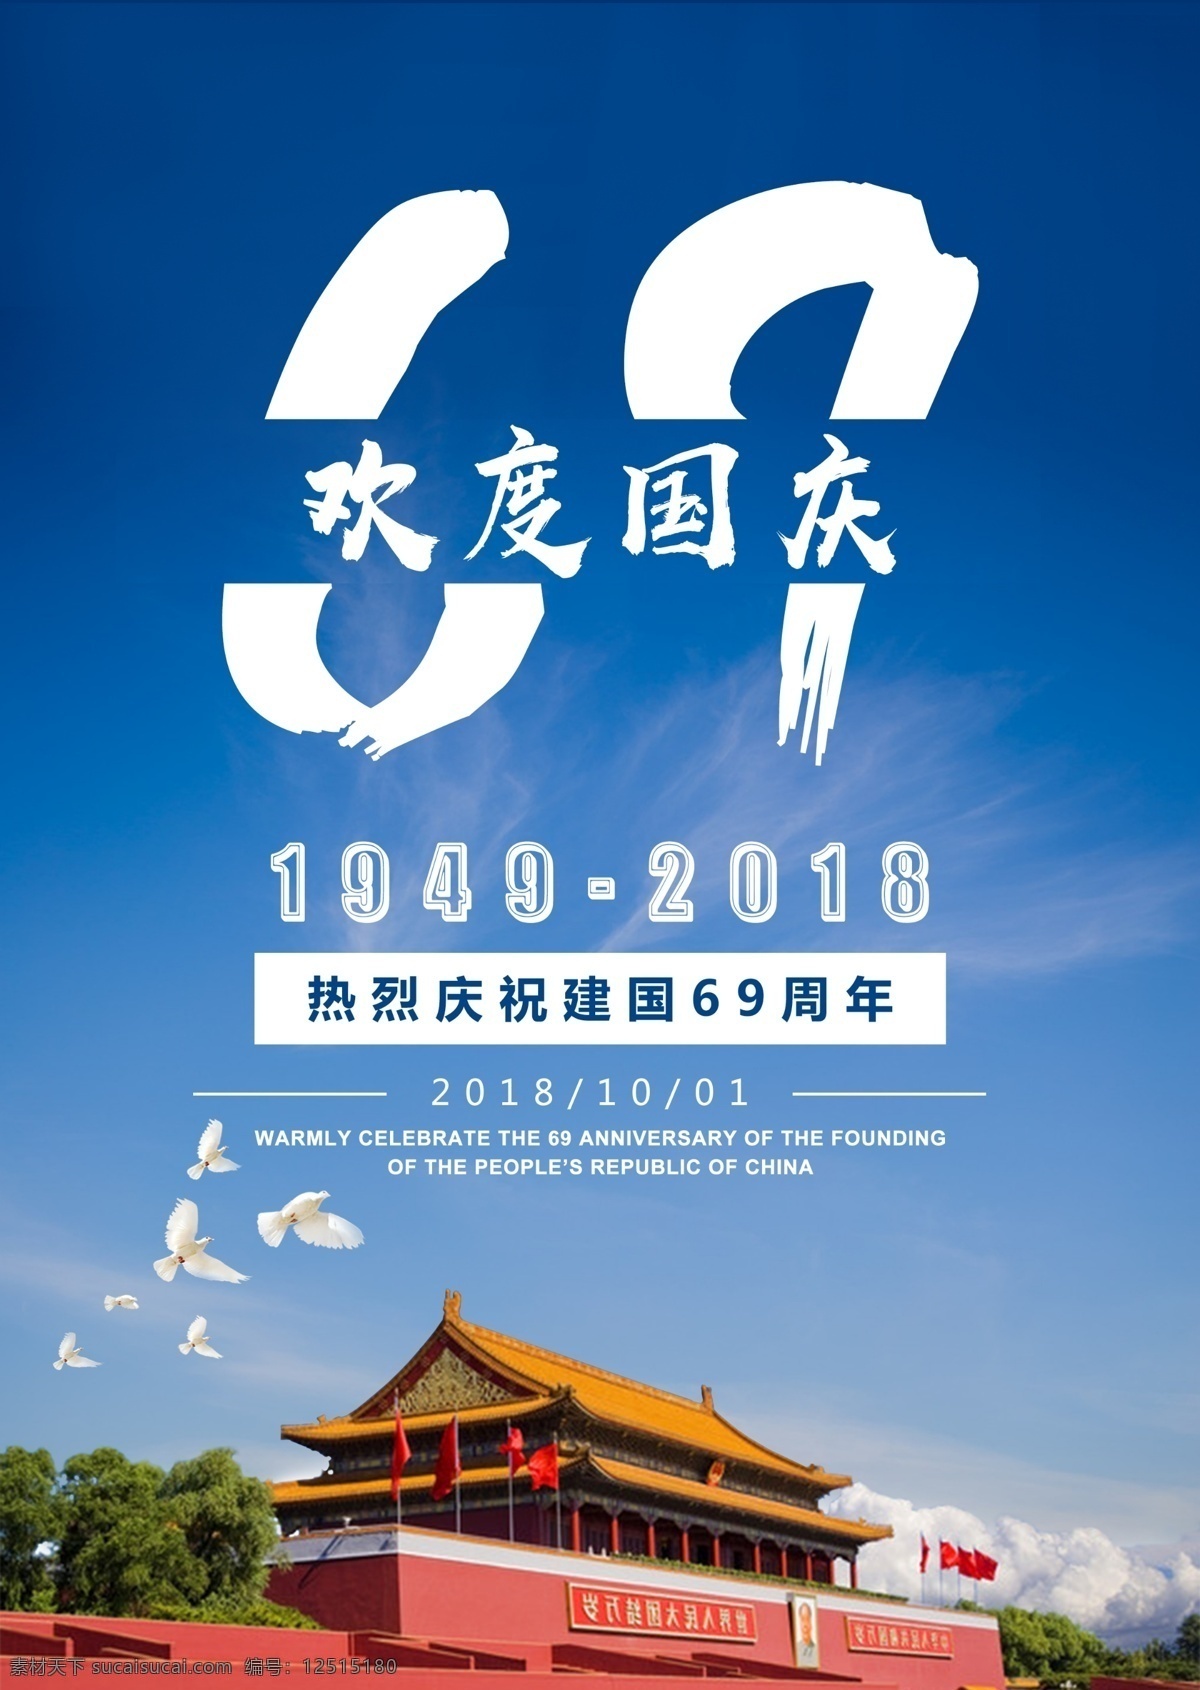 国庆 建国 周年 节日 模板 节日海报 蓝色背景 69周年 海报 10月1日